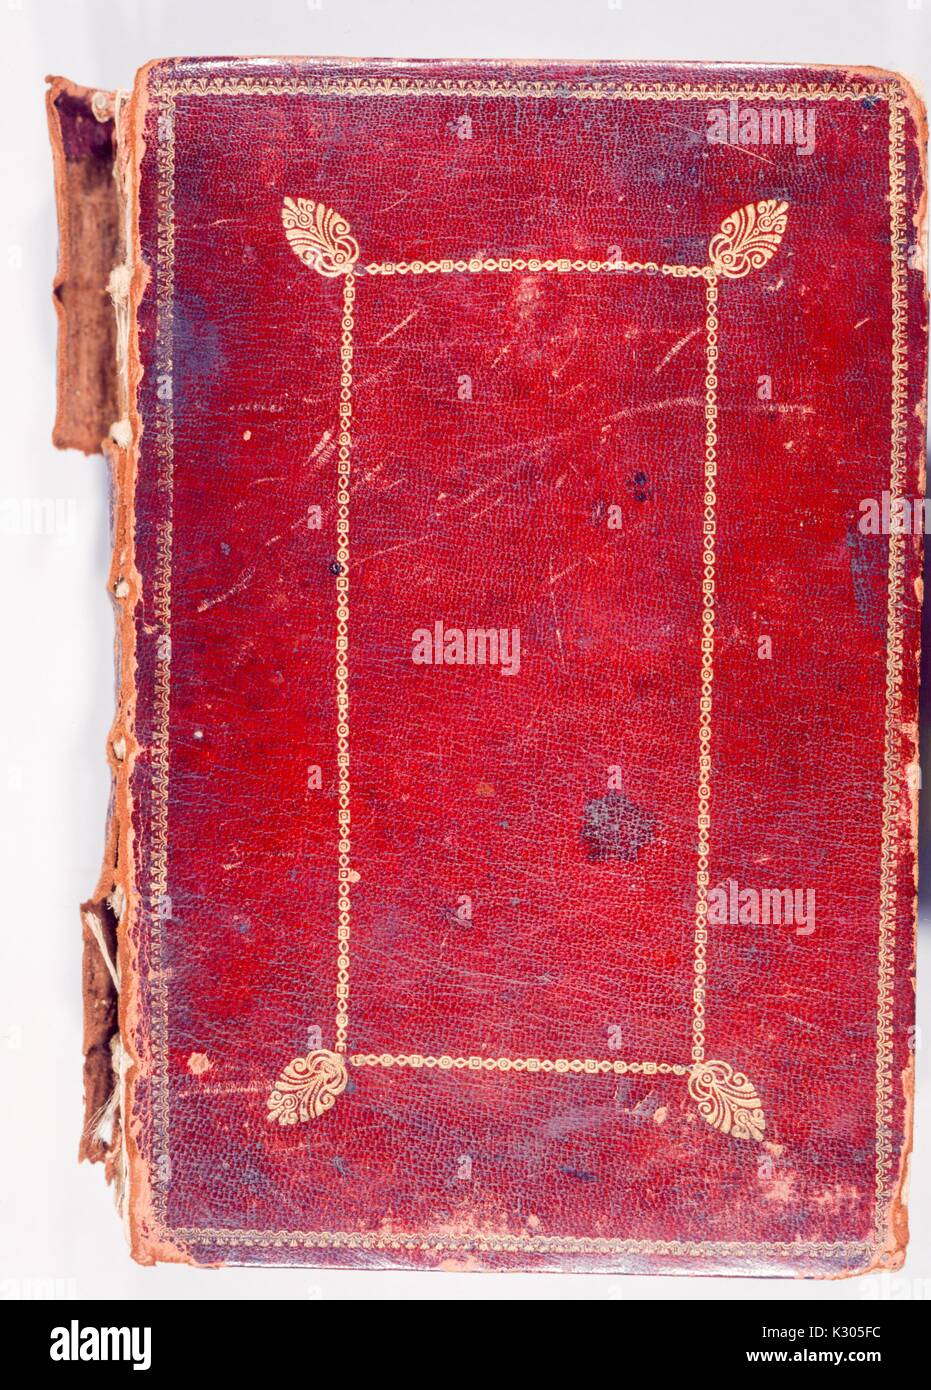 Coperchio del manoscritto illuminato, pelle di colore rosso con dettagli in oro, legame staccava leggermente, 2013. Foto Stock